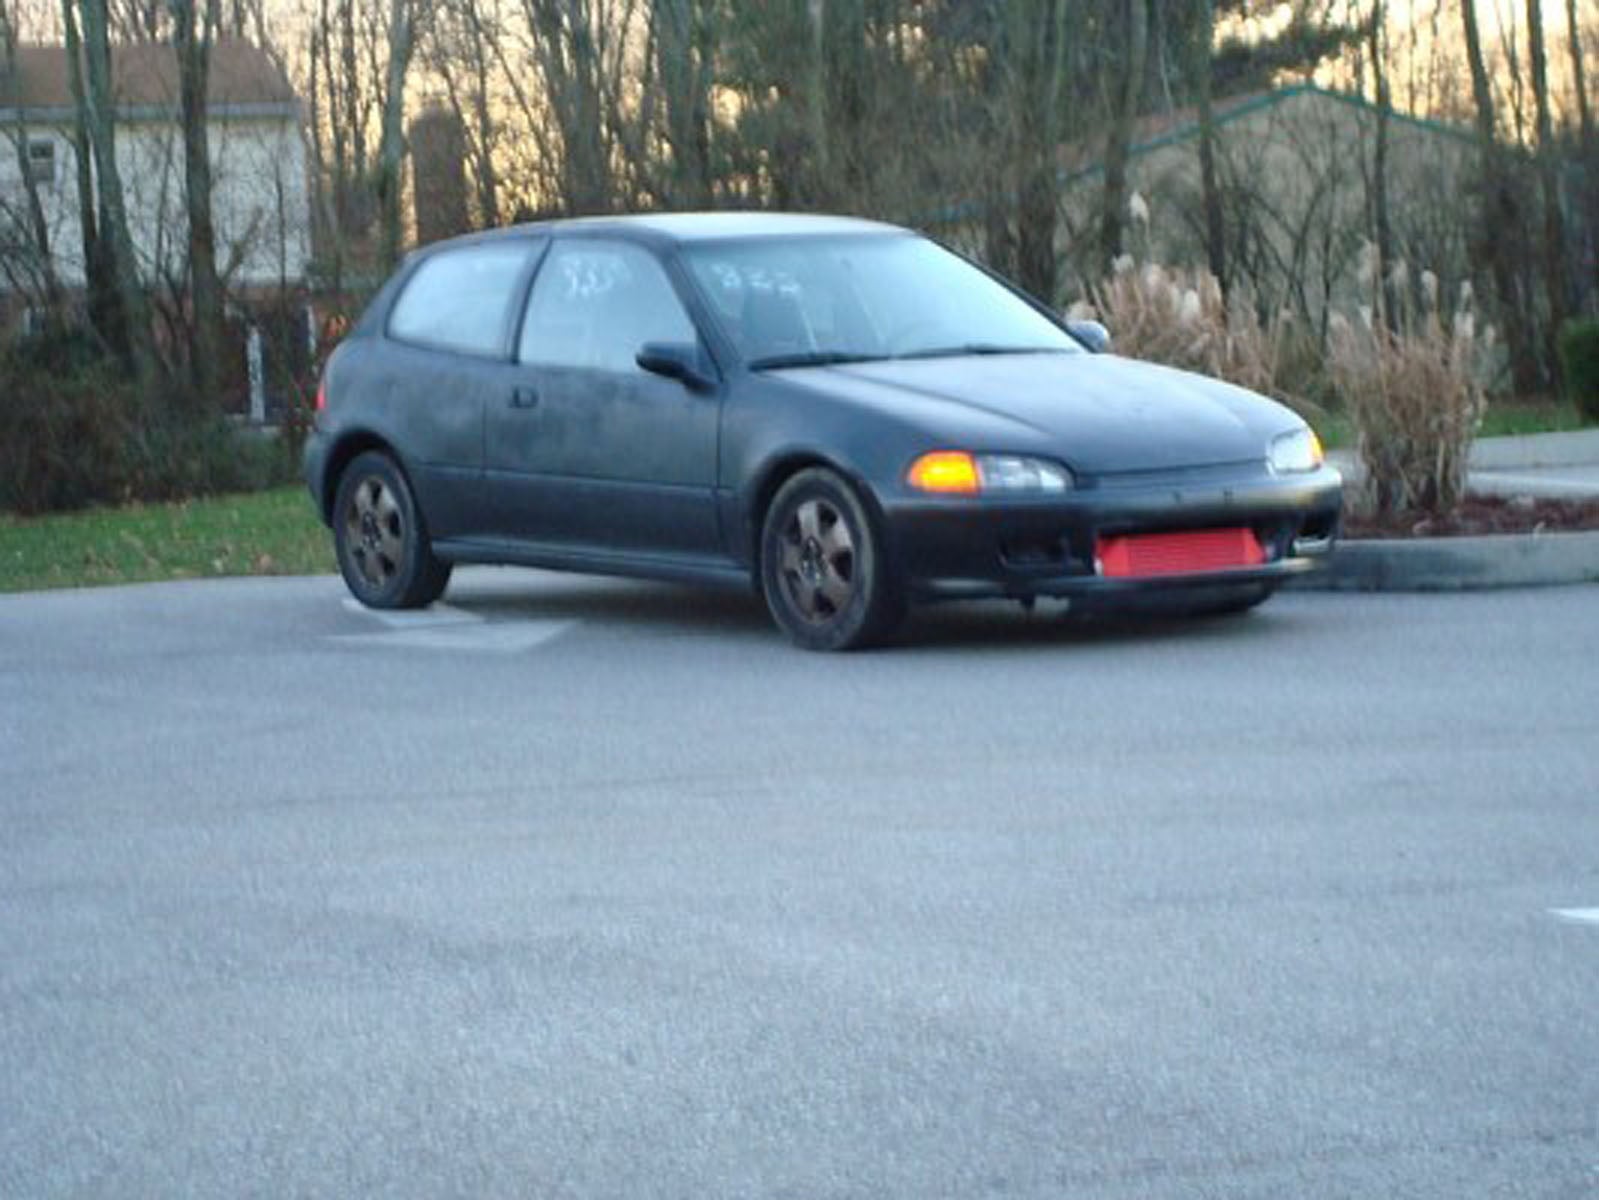 1993 civic dx hatchback